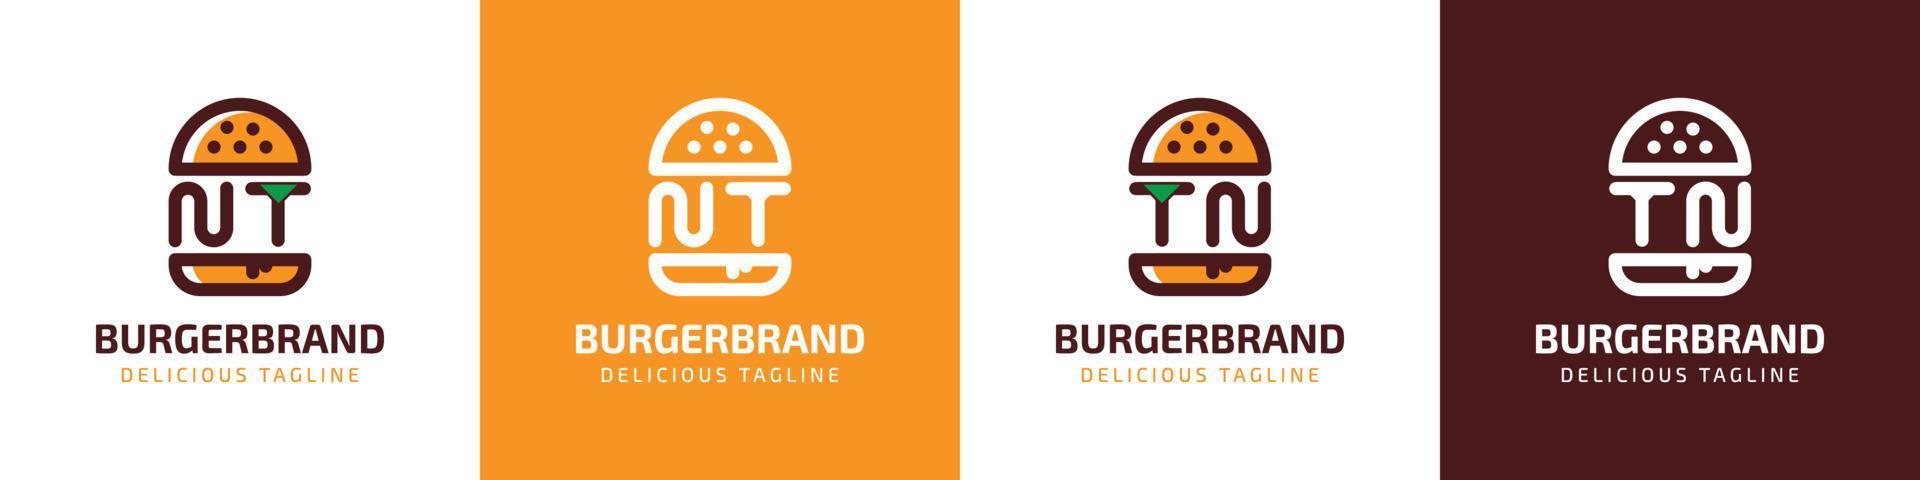 lettre NT et tn Burger logo, adapté pour tout affaires en relation à Burger avec NT ou tn initiales. vecteur